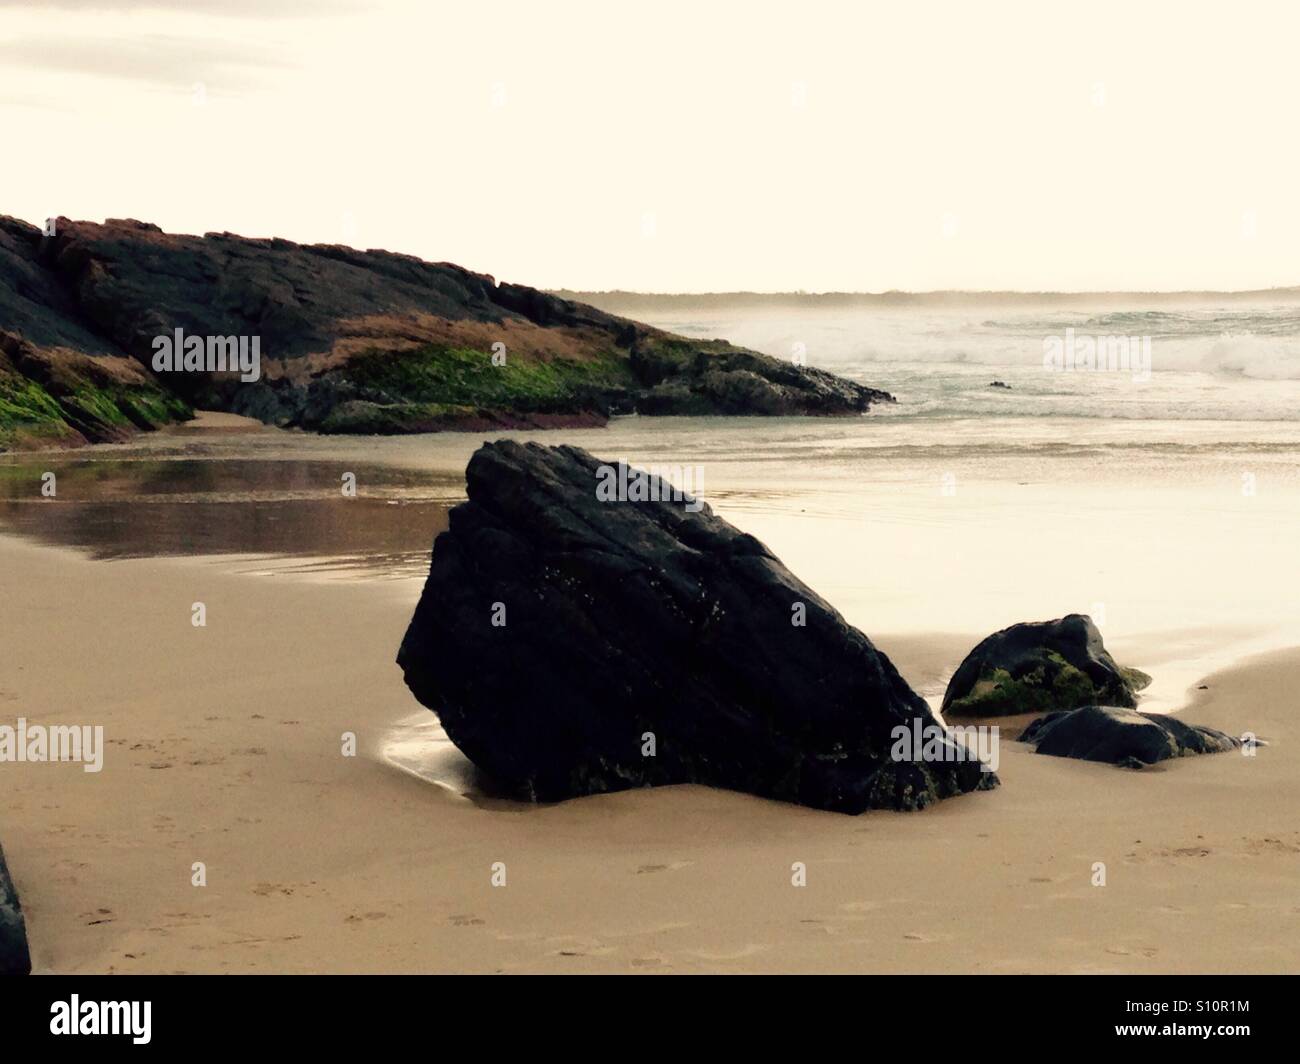 Robuste Rock von der Strandseite, die Kraft der sanften Wellen tragen Weg an einem unerschütterlichen Felsen im Laufe der Zeit, Geduld. Stockfoto